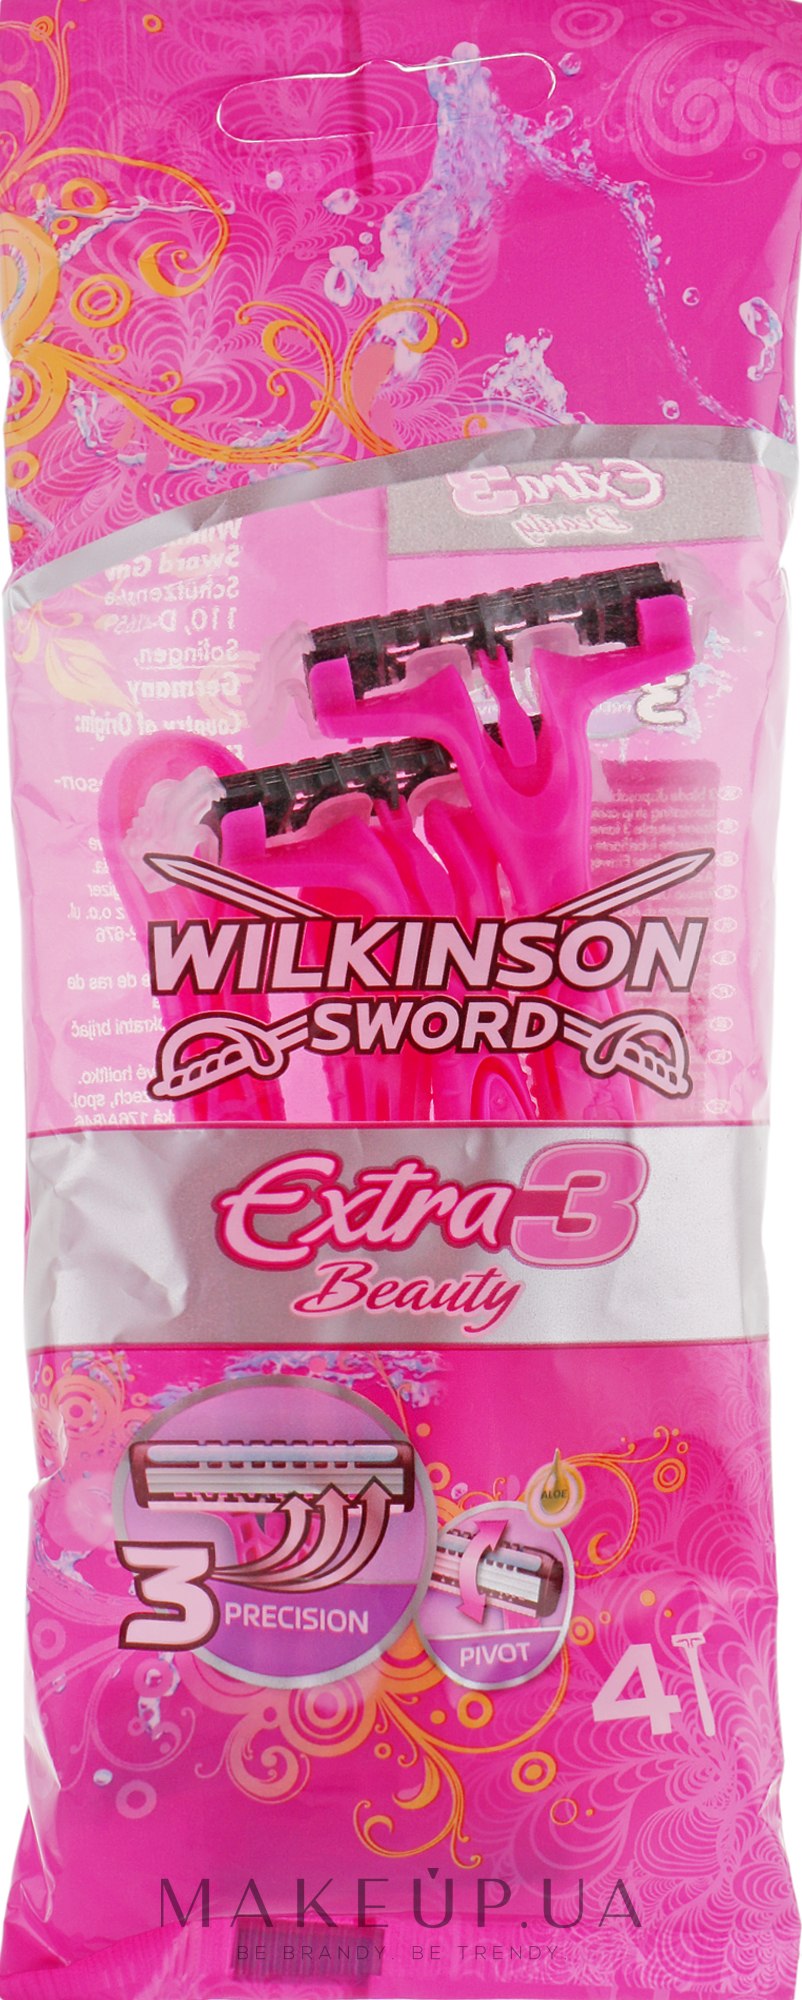 Одноразові станки, 4 шт. - Wilkinson Sword Xtreme3 Beauty — фото 4шт